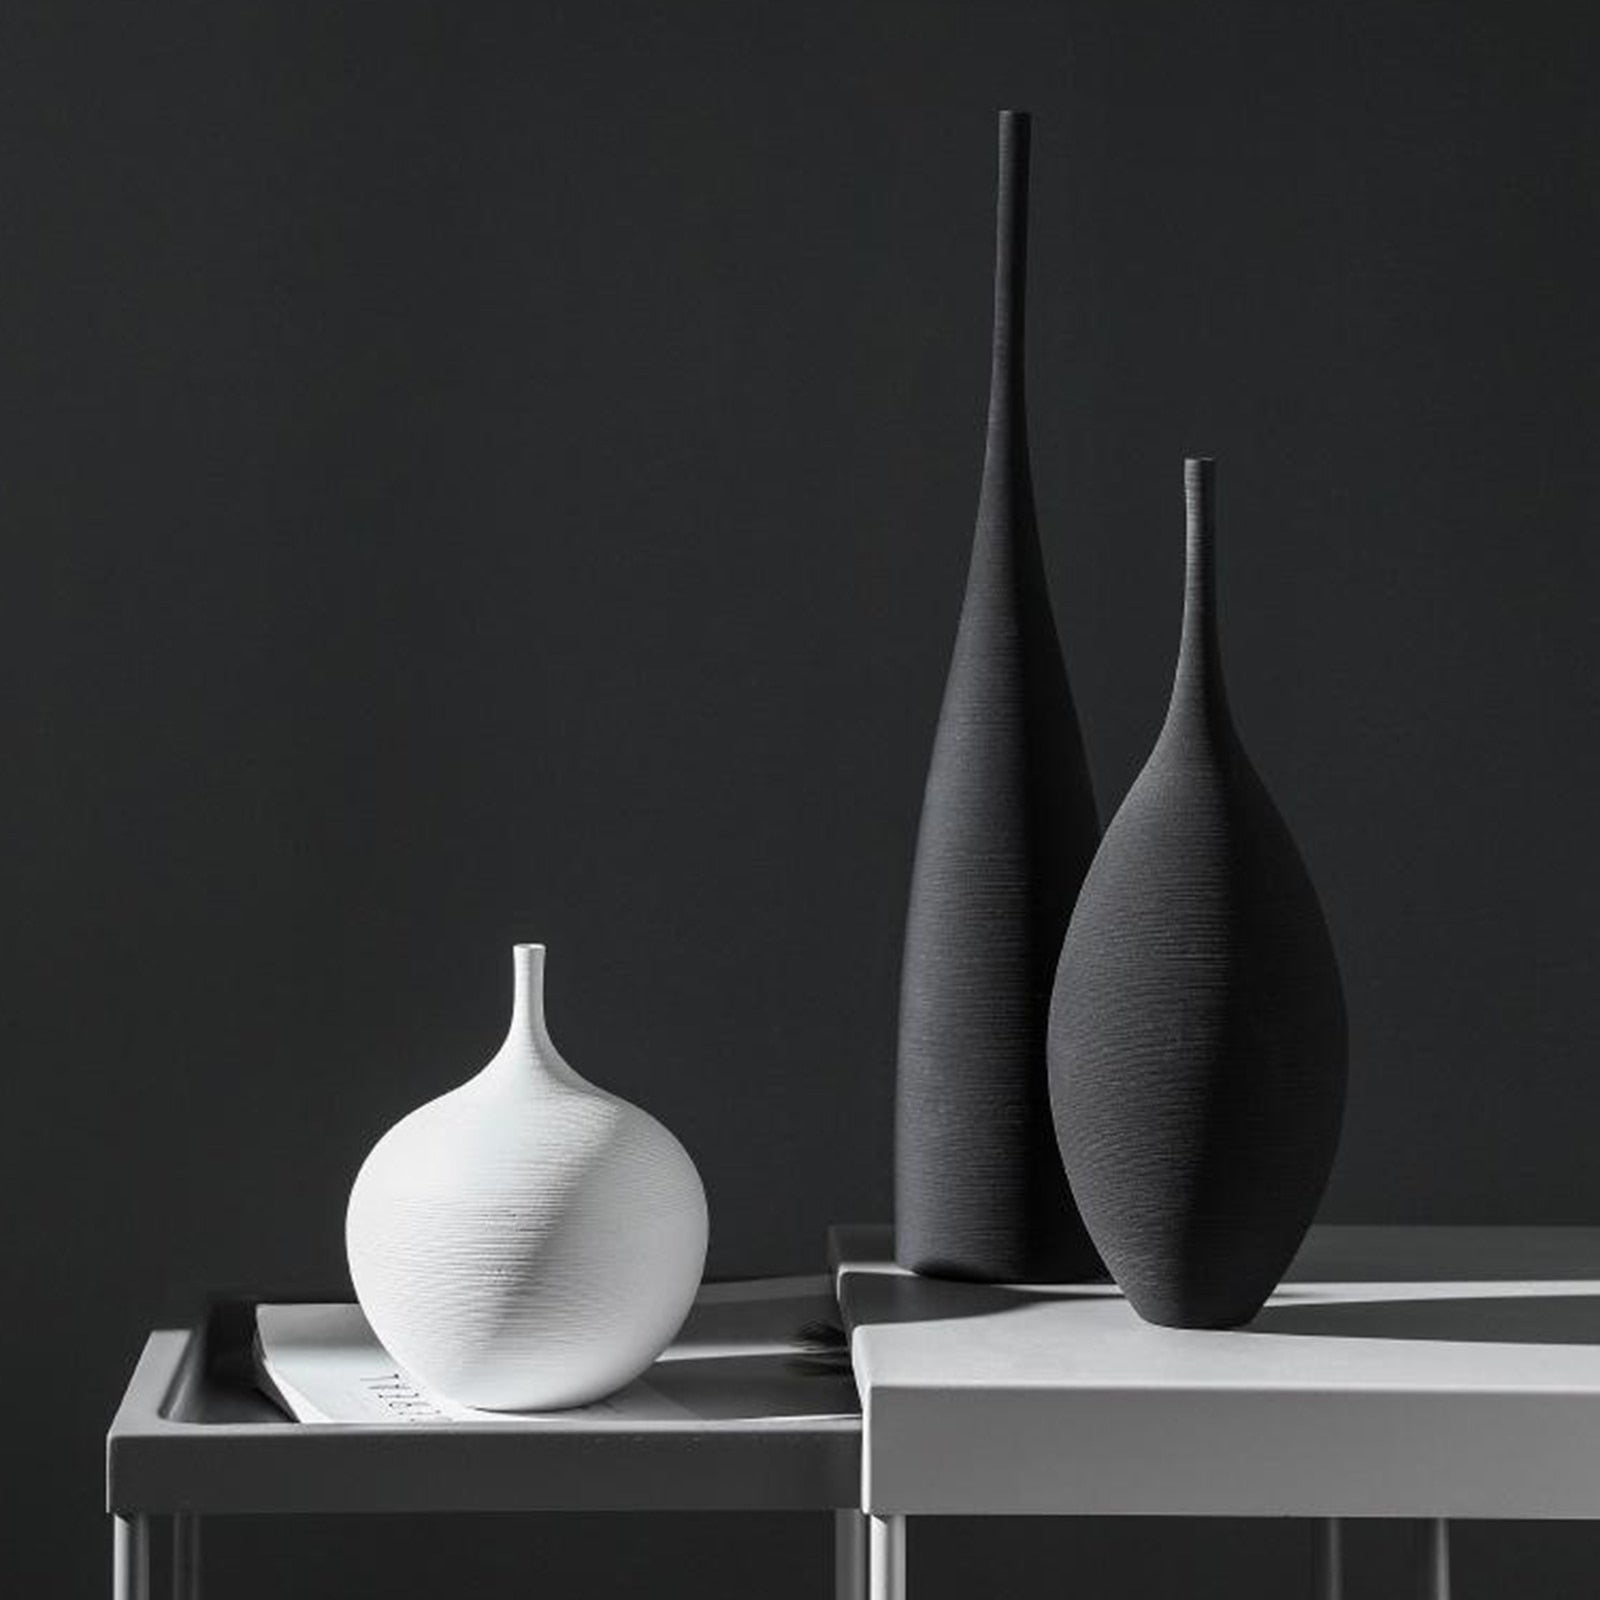 Zen, Minimalist Flower Vase - 3 Piece Set